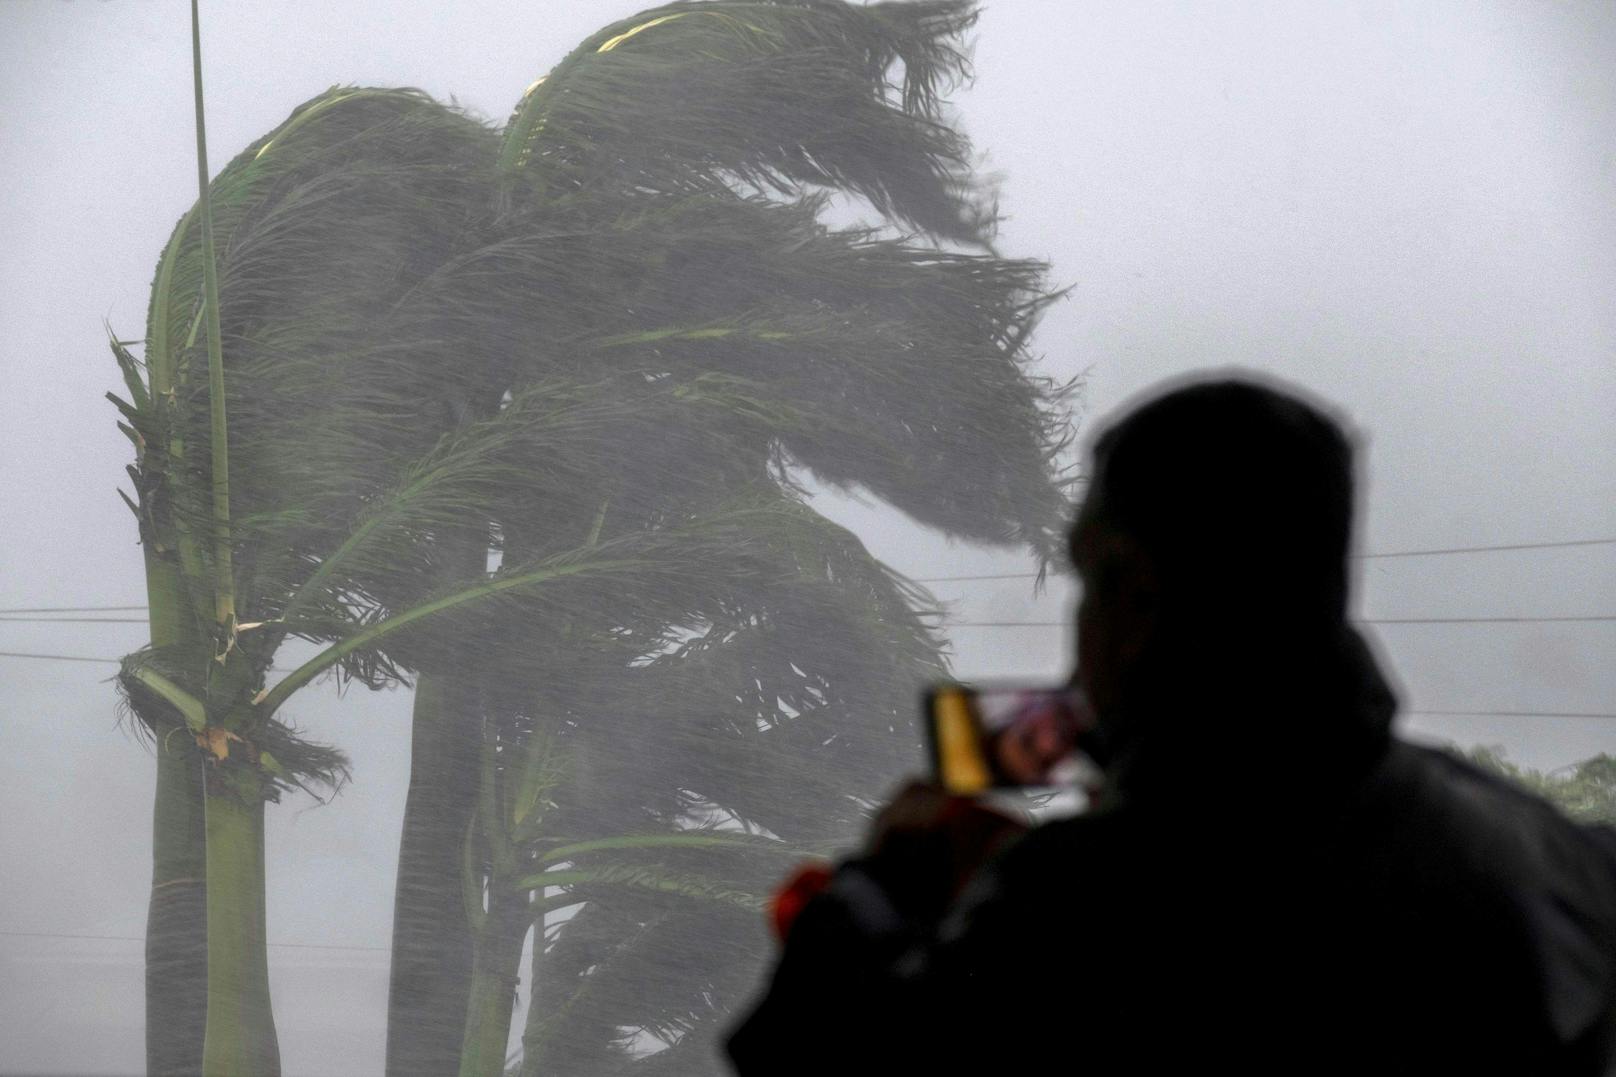 Ein Mann streamt den Hurrikan sogar, um anderen Menschen die Katastrophe zu zeigen.